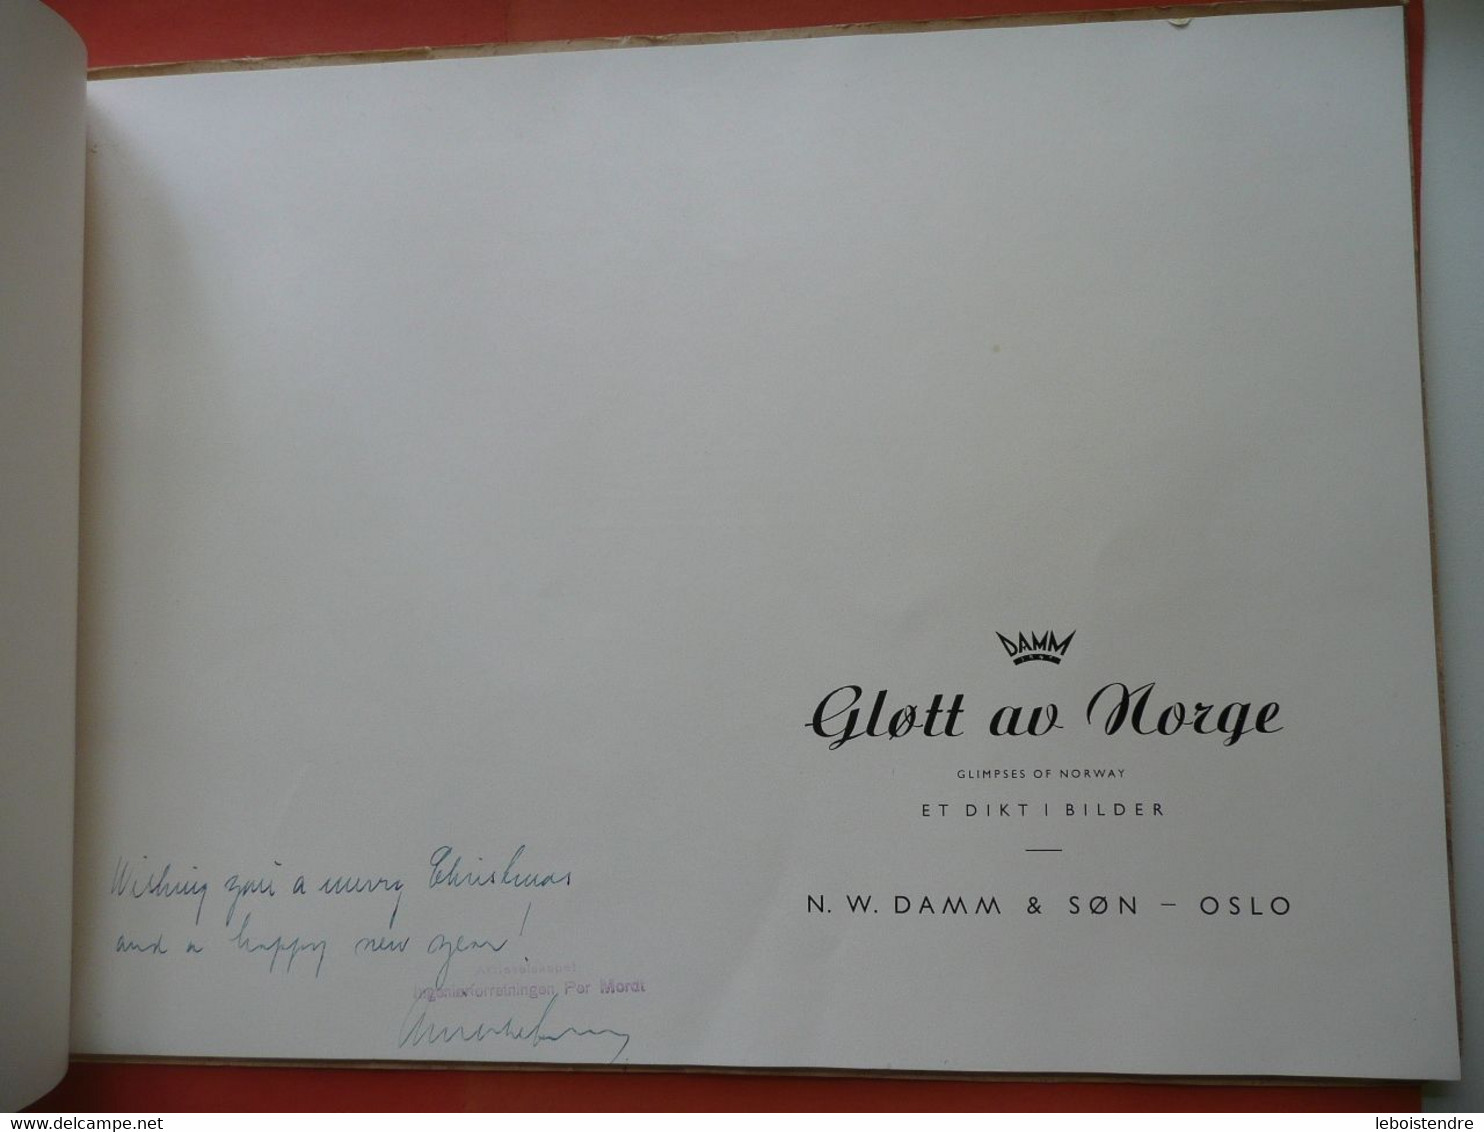 GLOTT AV NORGE  GLIMPSES OF NORWAY ET DIKTI BILDER N. W. DAMM & SON OLSO ARNE DAMM NON DATE ~1948 PHOTOGRAPHIES - Lingue Scandinave